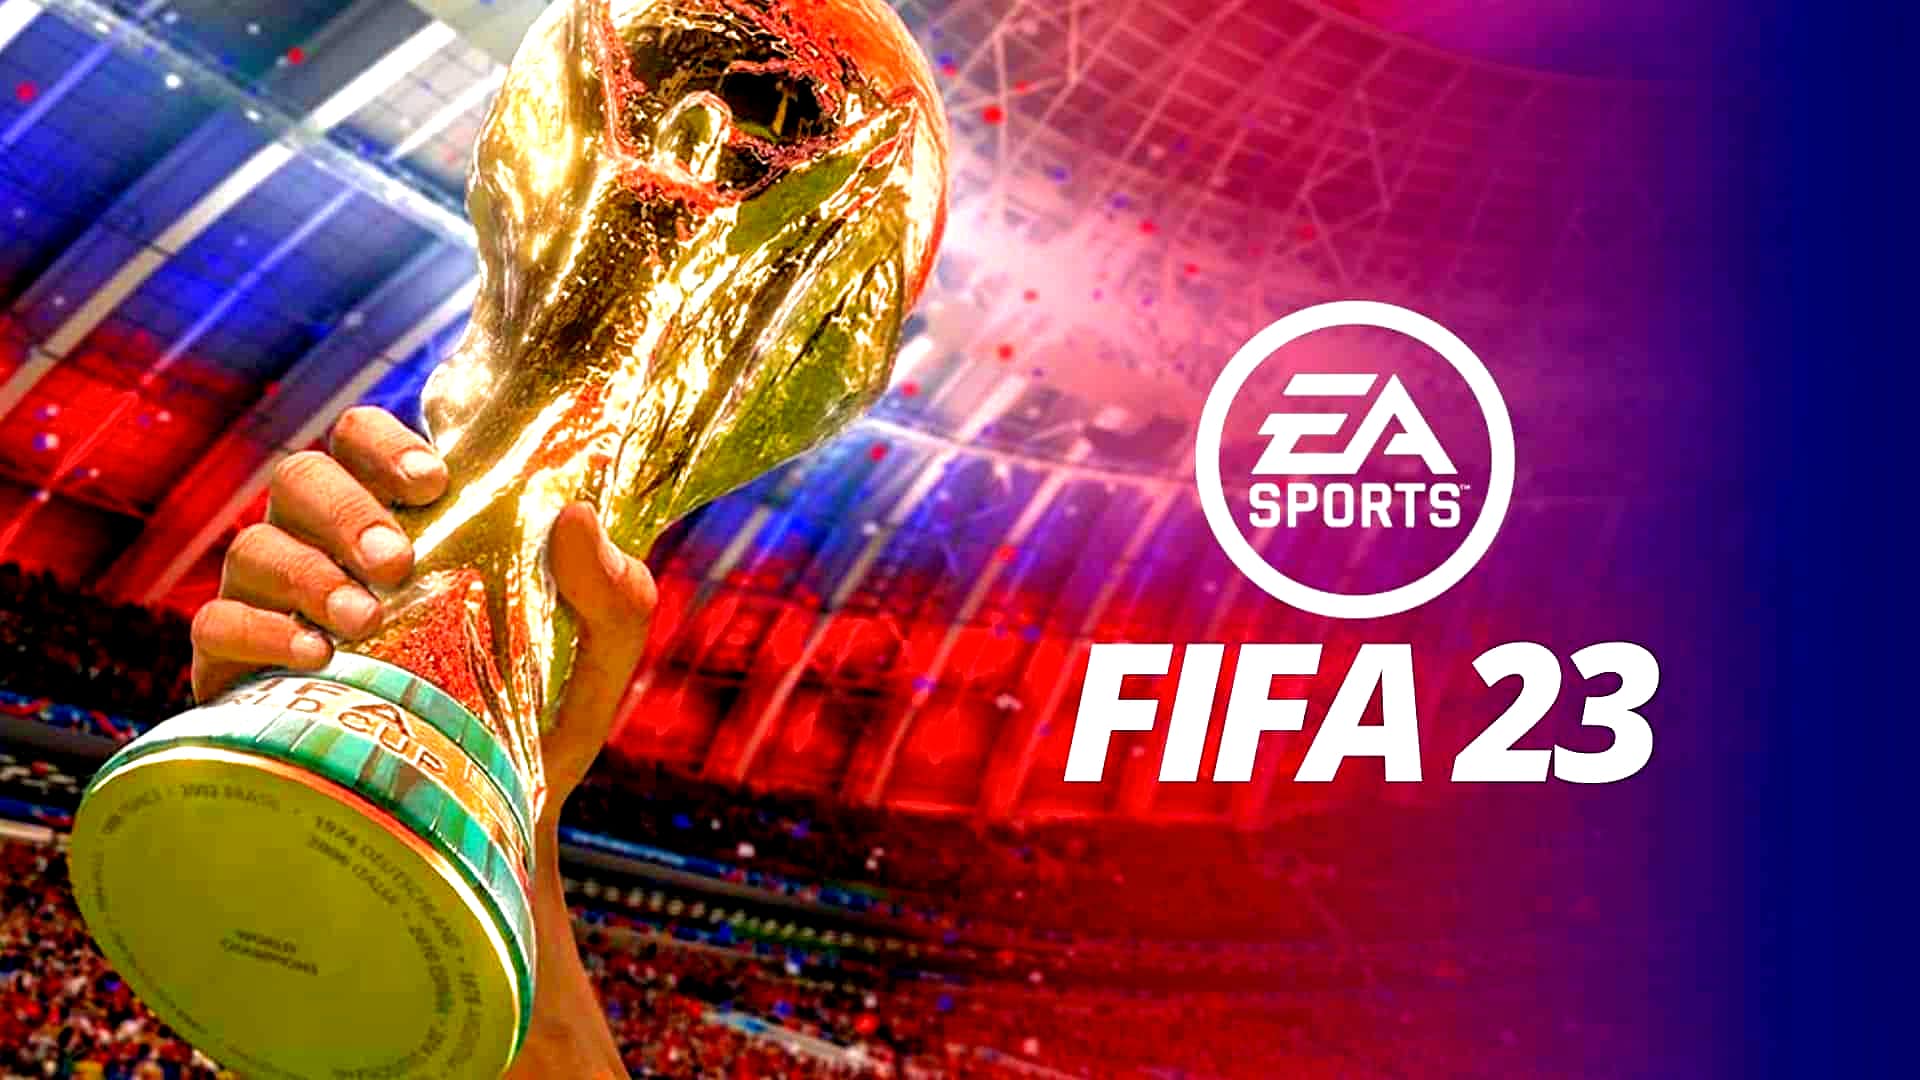 Se confirmó la fecha de lanzamiento de FIFA 23 y los beneficios